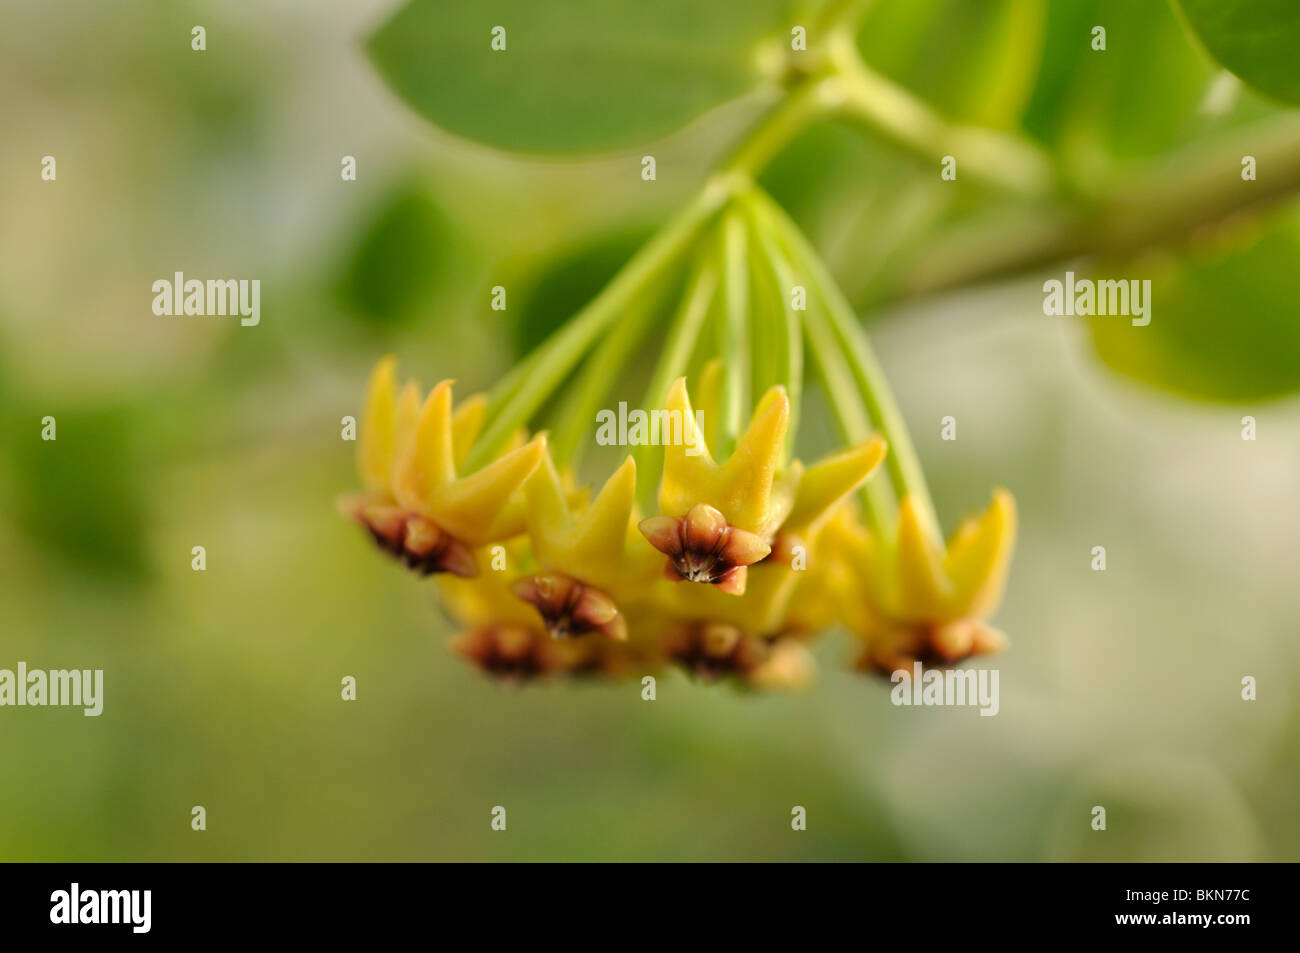 Wax plant (Hoya cumingiana) Stock Photo